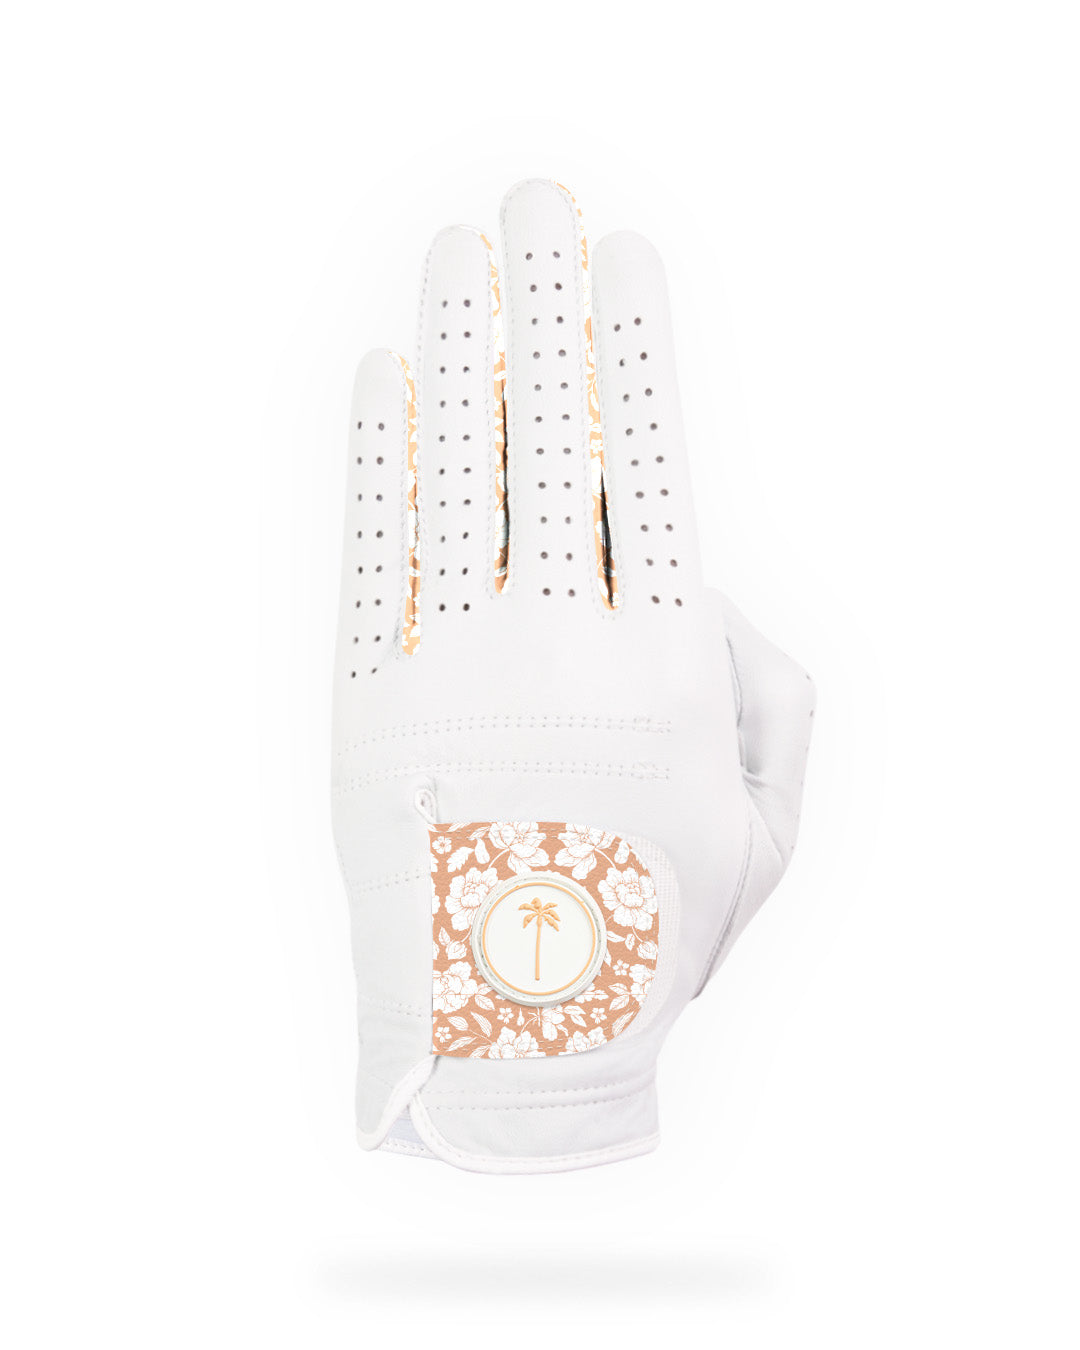 Women's OC Glove - Palm Golf Co.